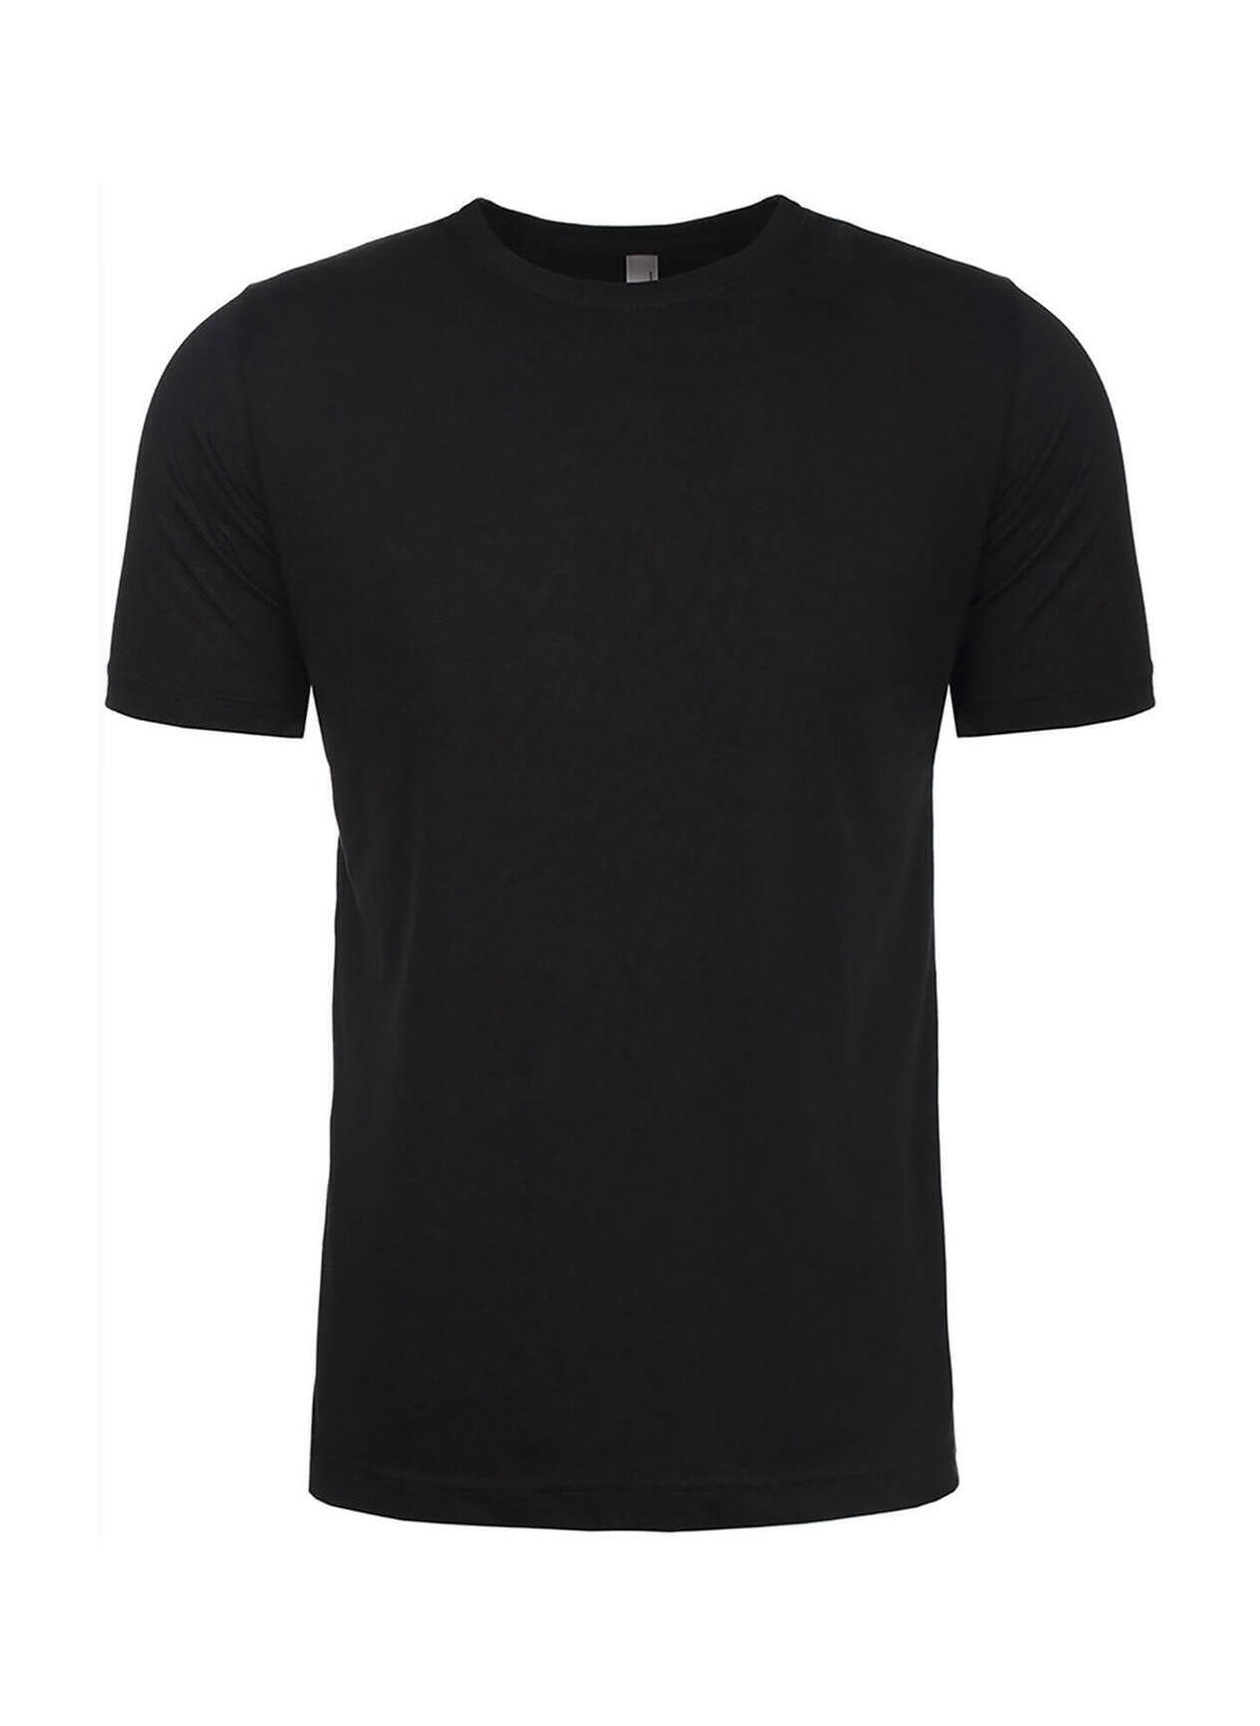 Next Level Men's Black Unisex Poly/Cotton Crew T-Shirt